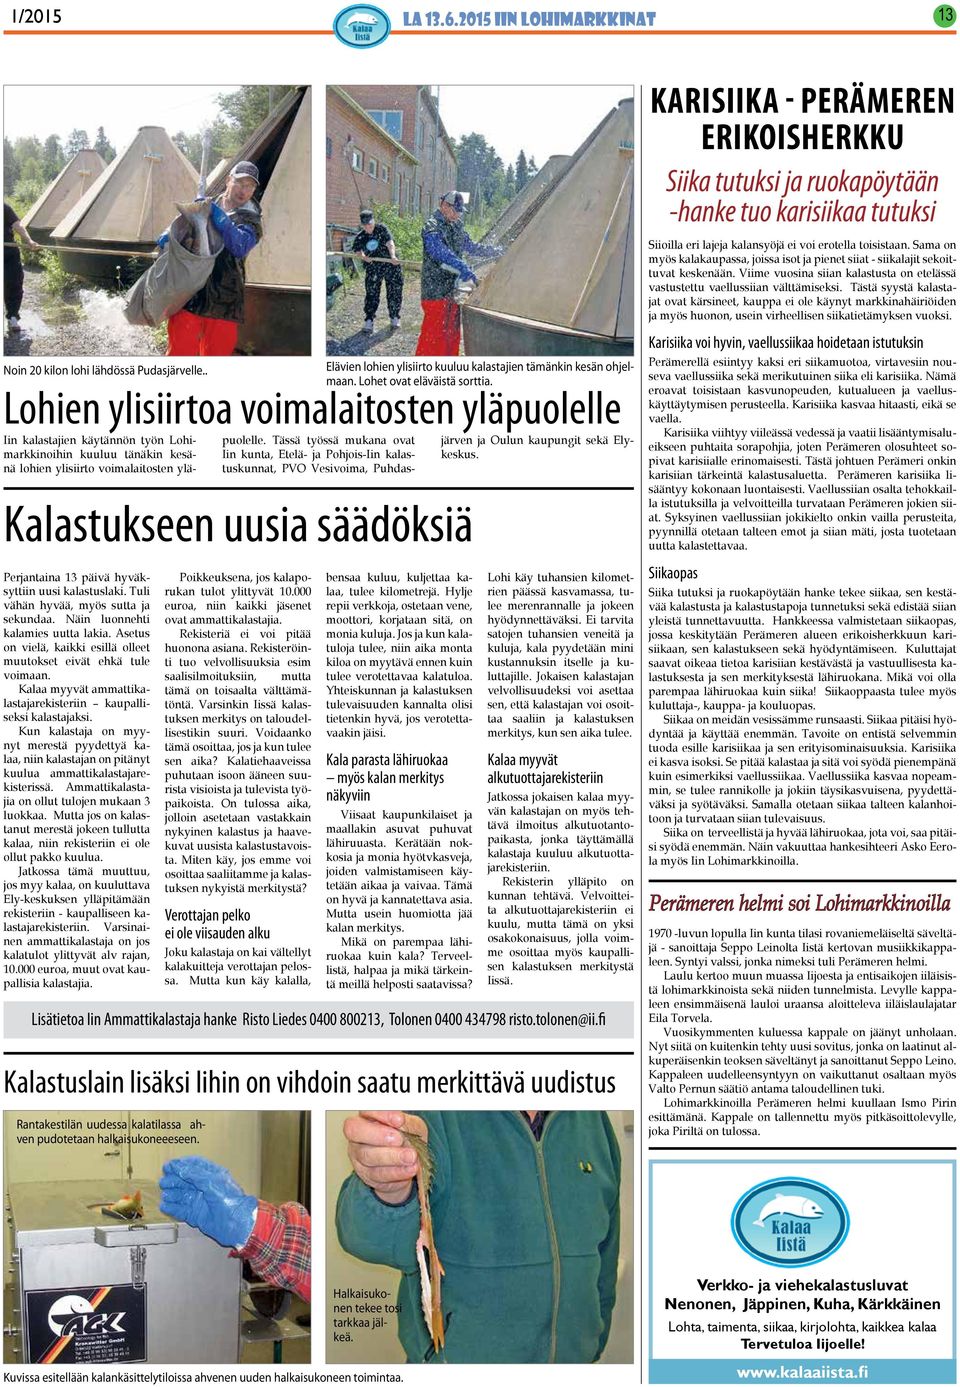 Tässä työssä mukana ovat Iin kunta, Etelä- ja Pohjois-Iin kalastuskunnat, PVO Vesivoima, Puhdasjärven ja Oulun kaupungit sekä Elykeskus.